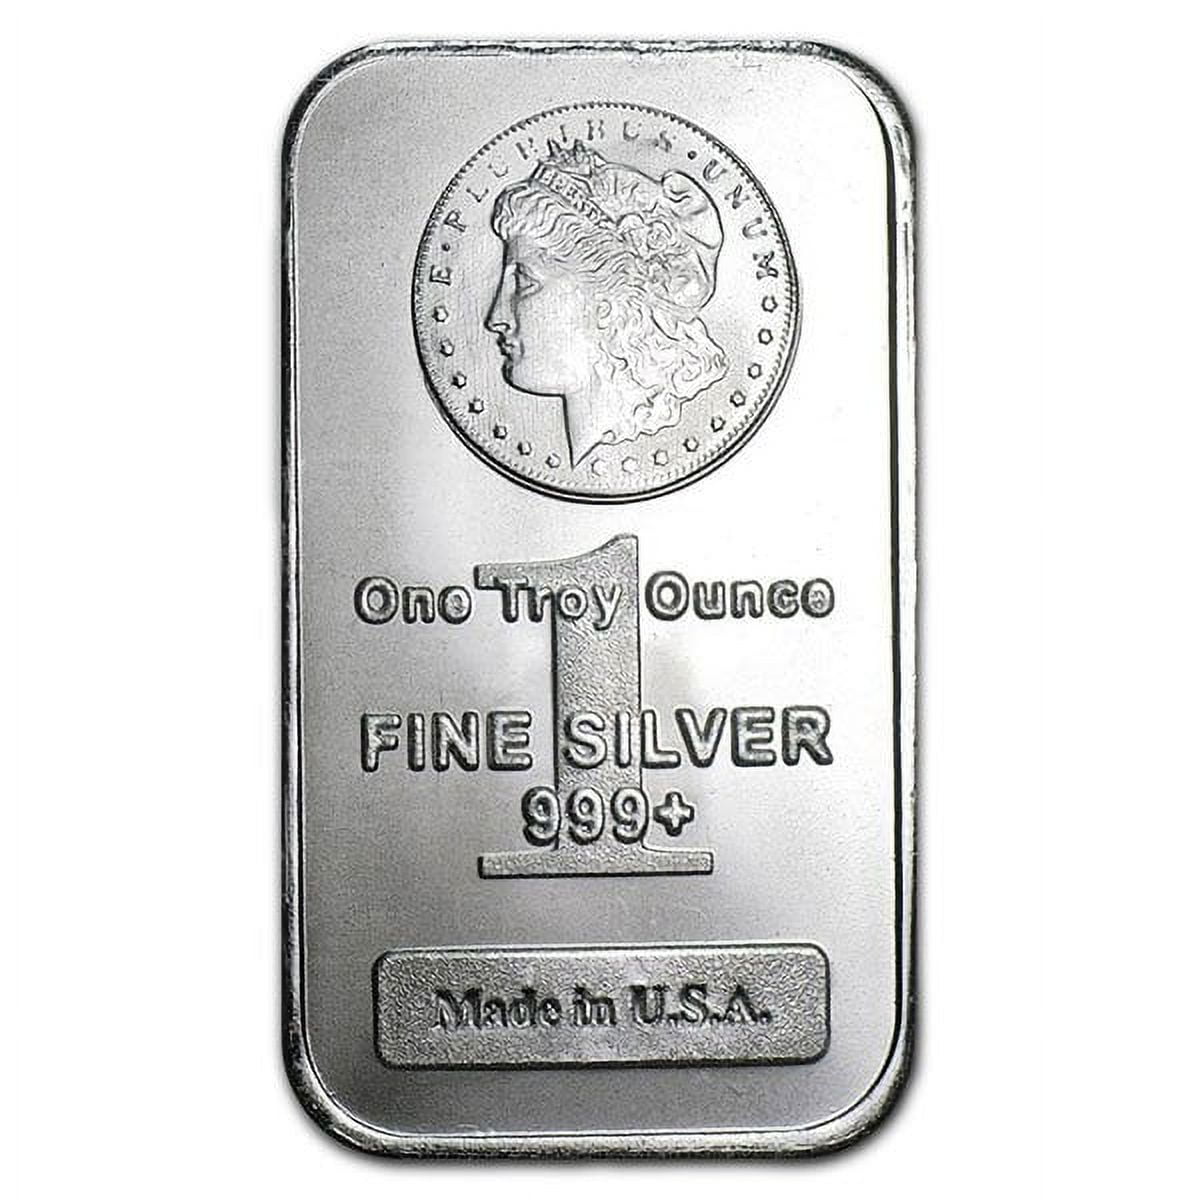 Private Mint's Morgan Design Silver Bar - 1 Oz .999 Pure 